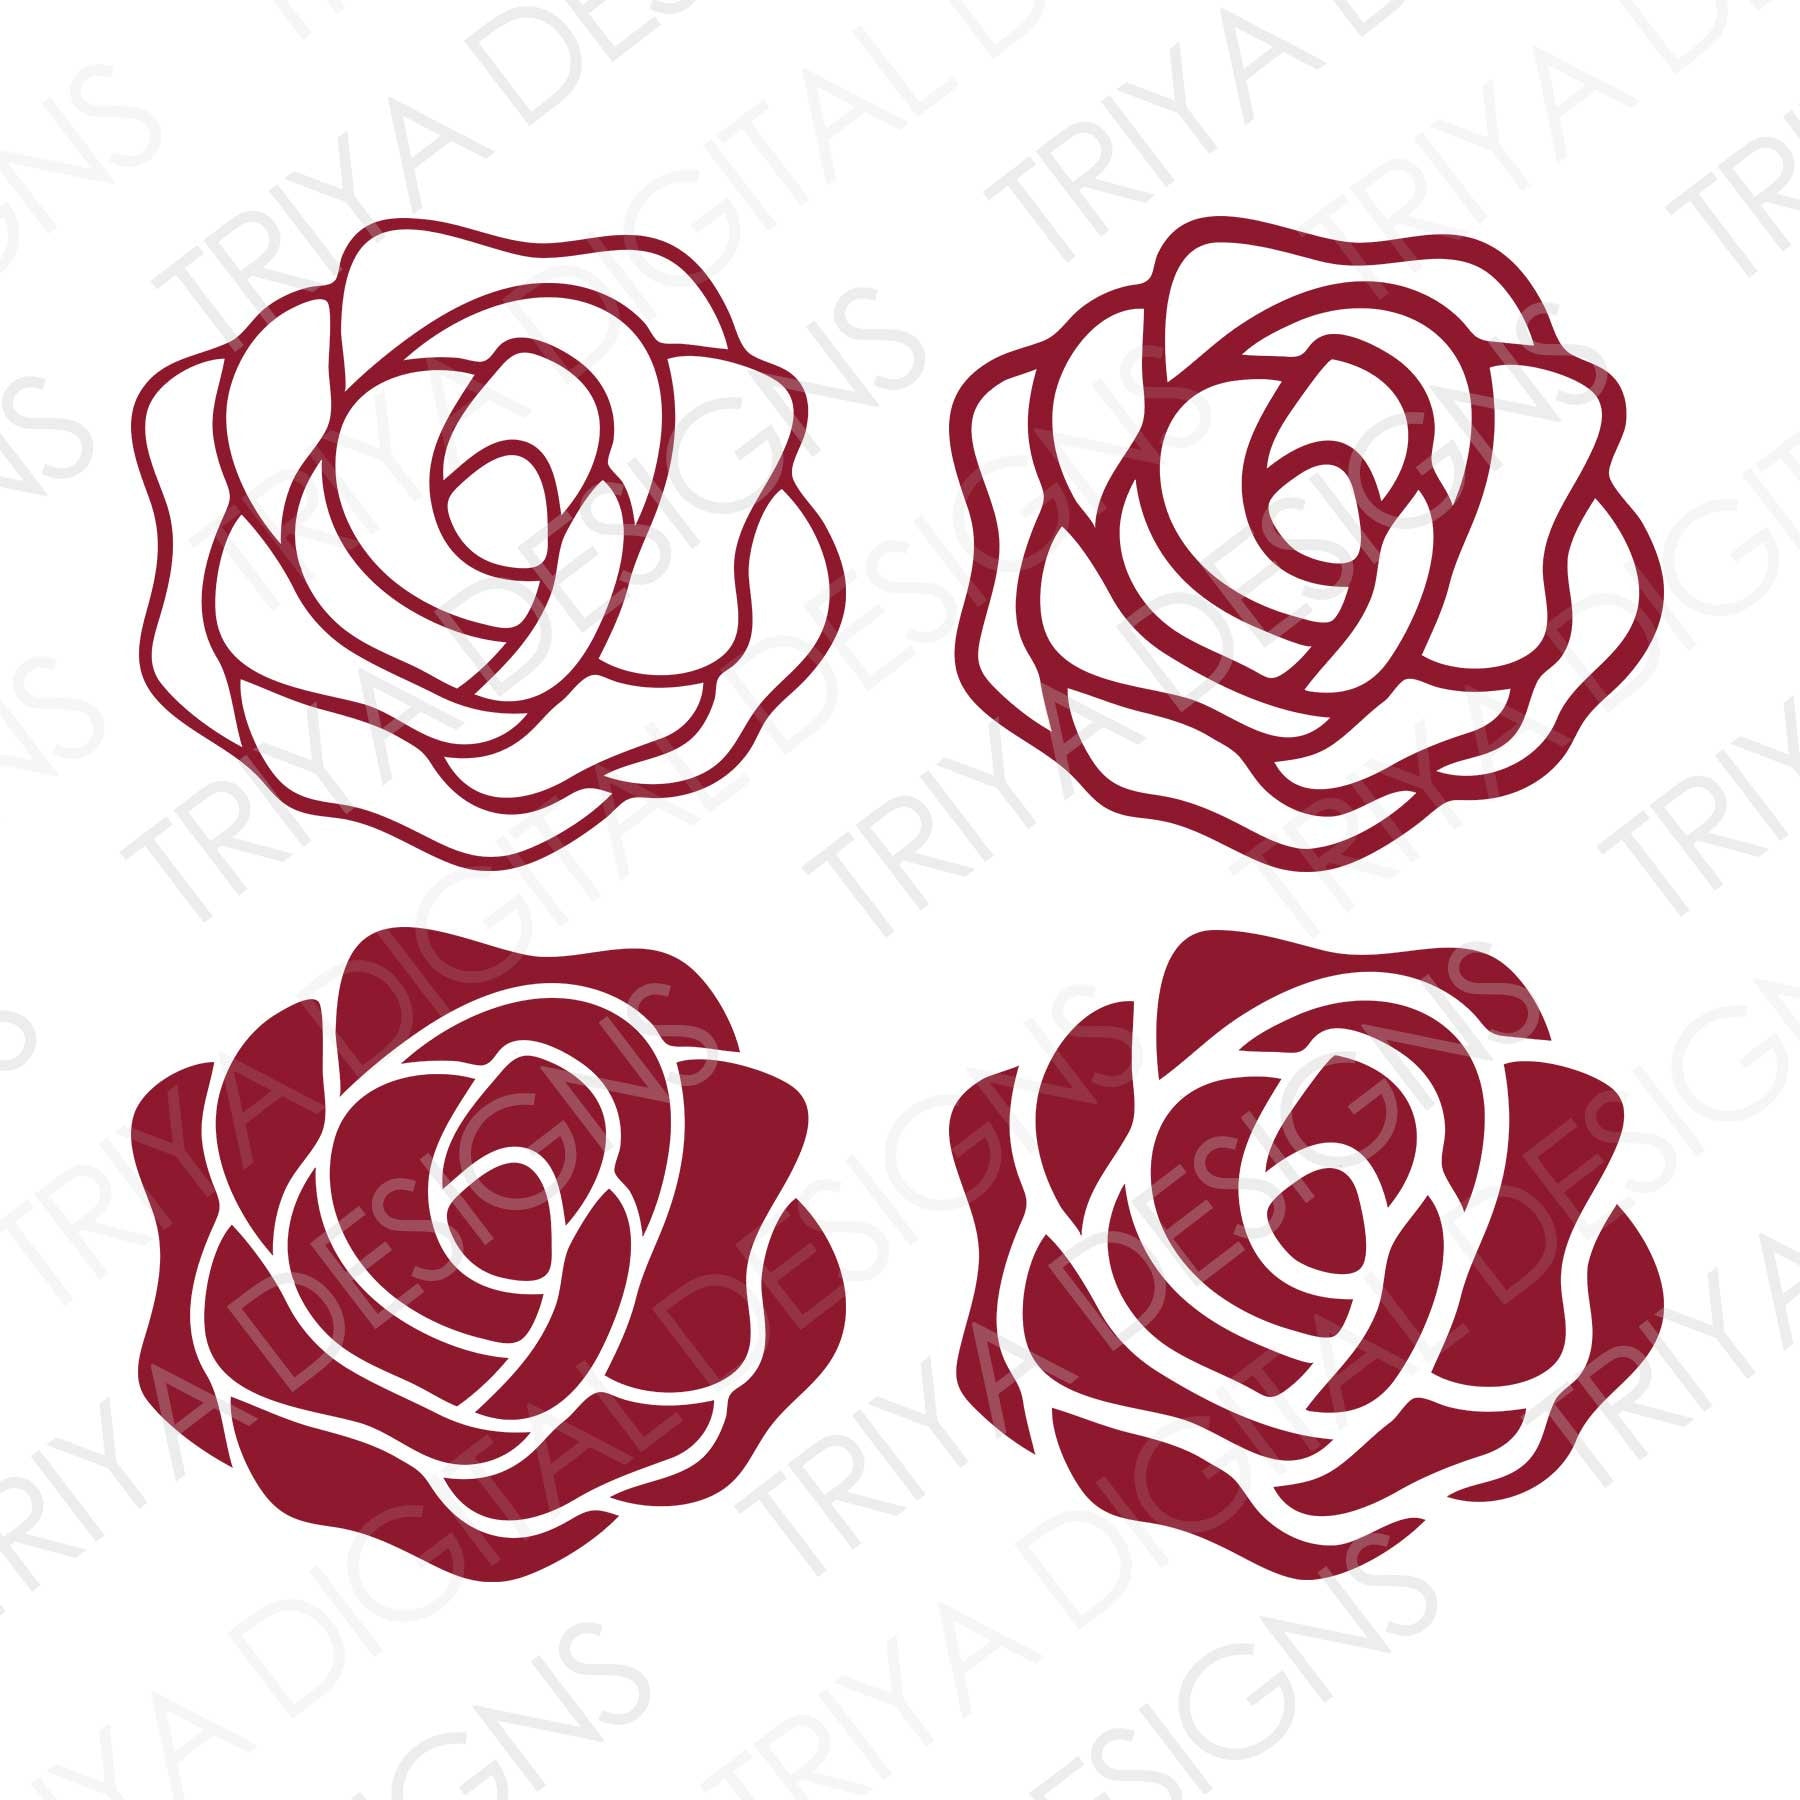 Free Rose SVG, Elegant Rose Vector